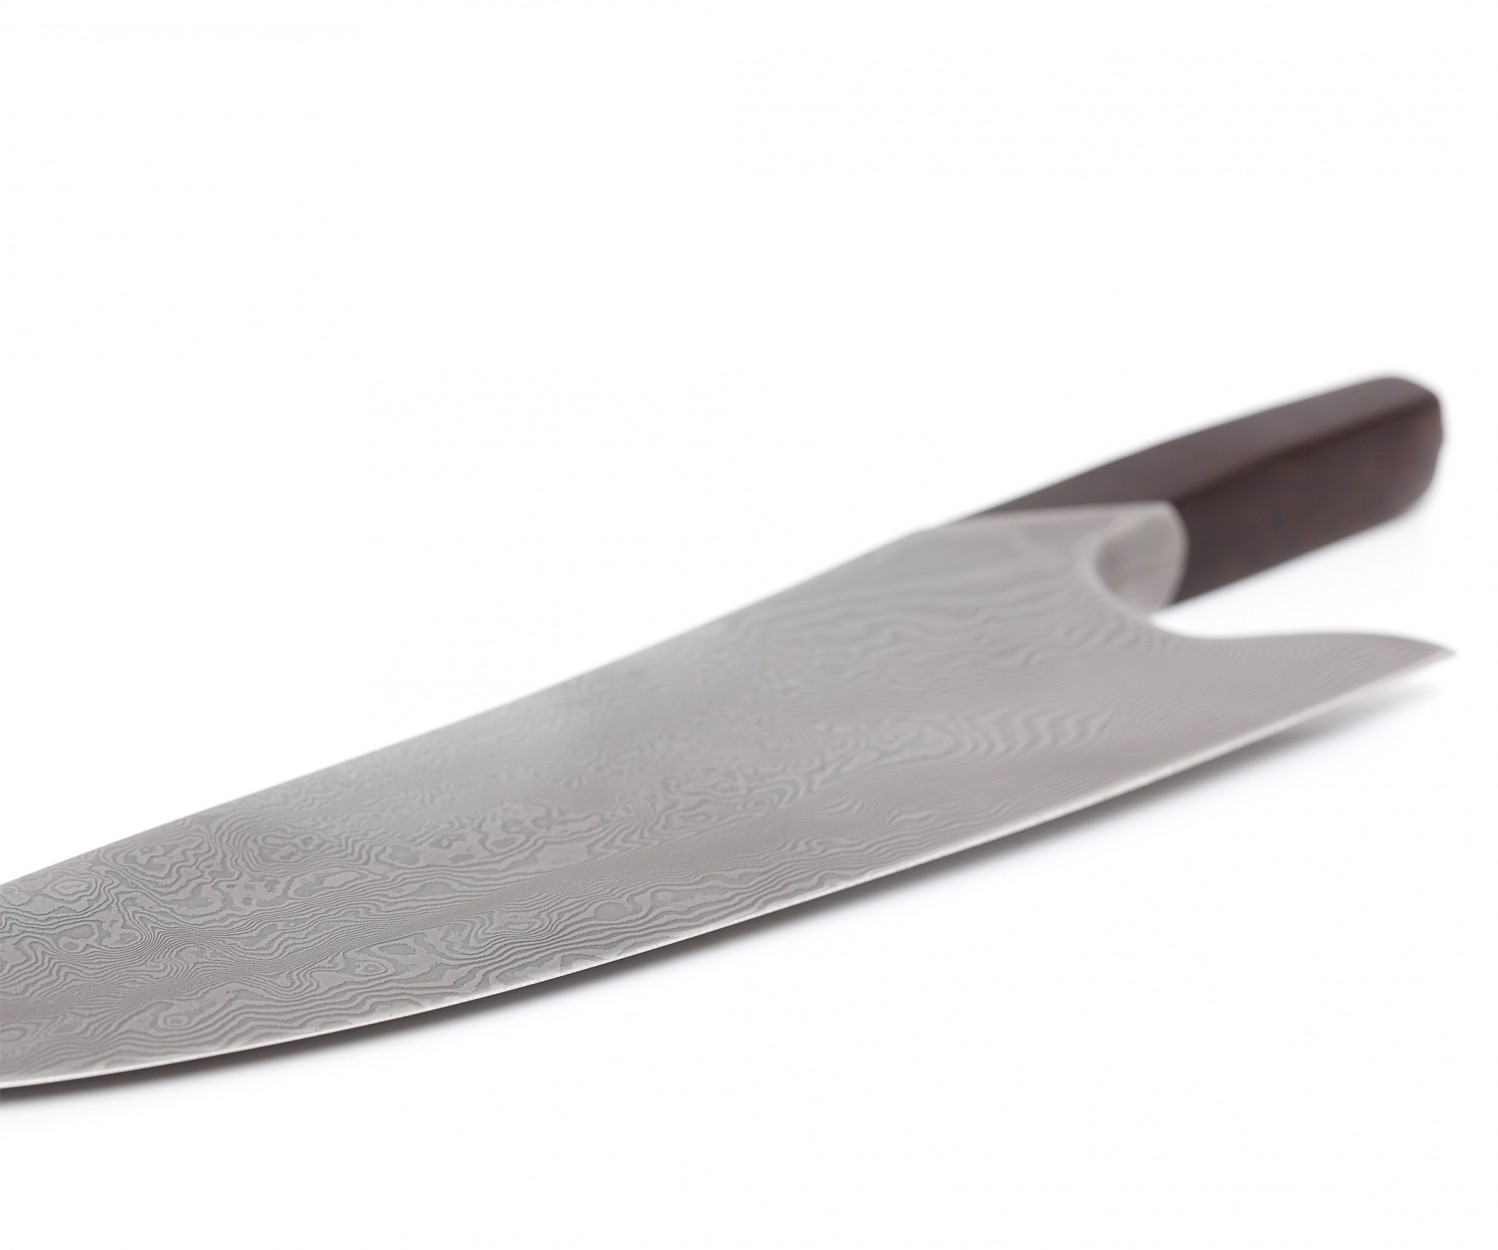 THE KNIFE,  300 Lagen Damast Kochmesser von Güde nicht rostfrei  Quality Made in SG bei ISS